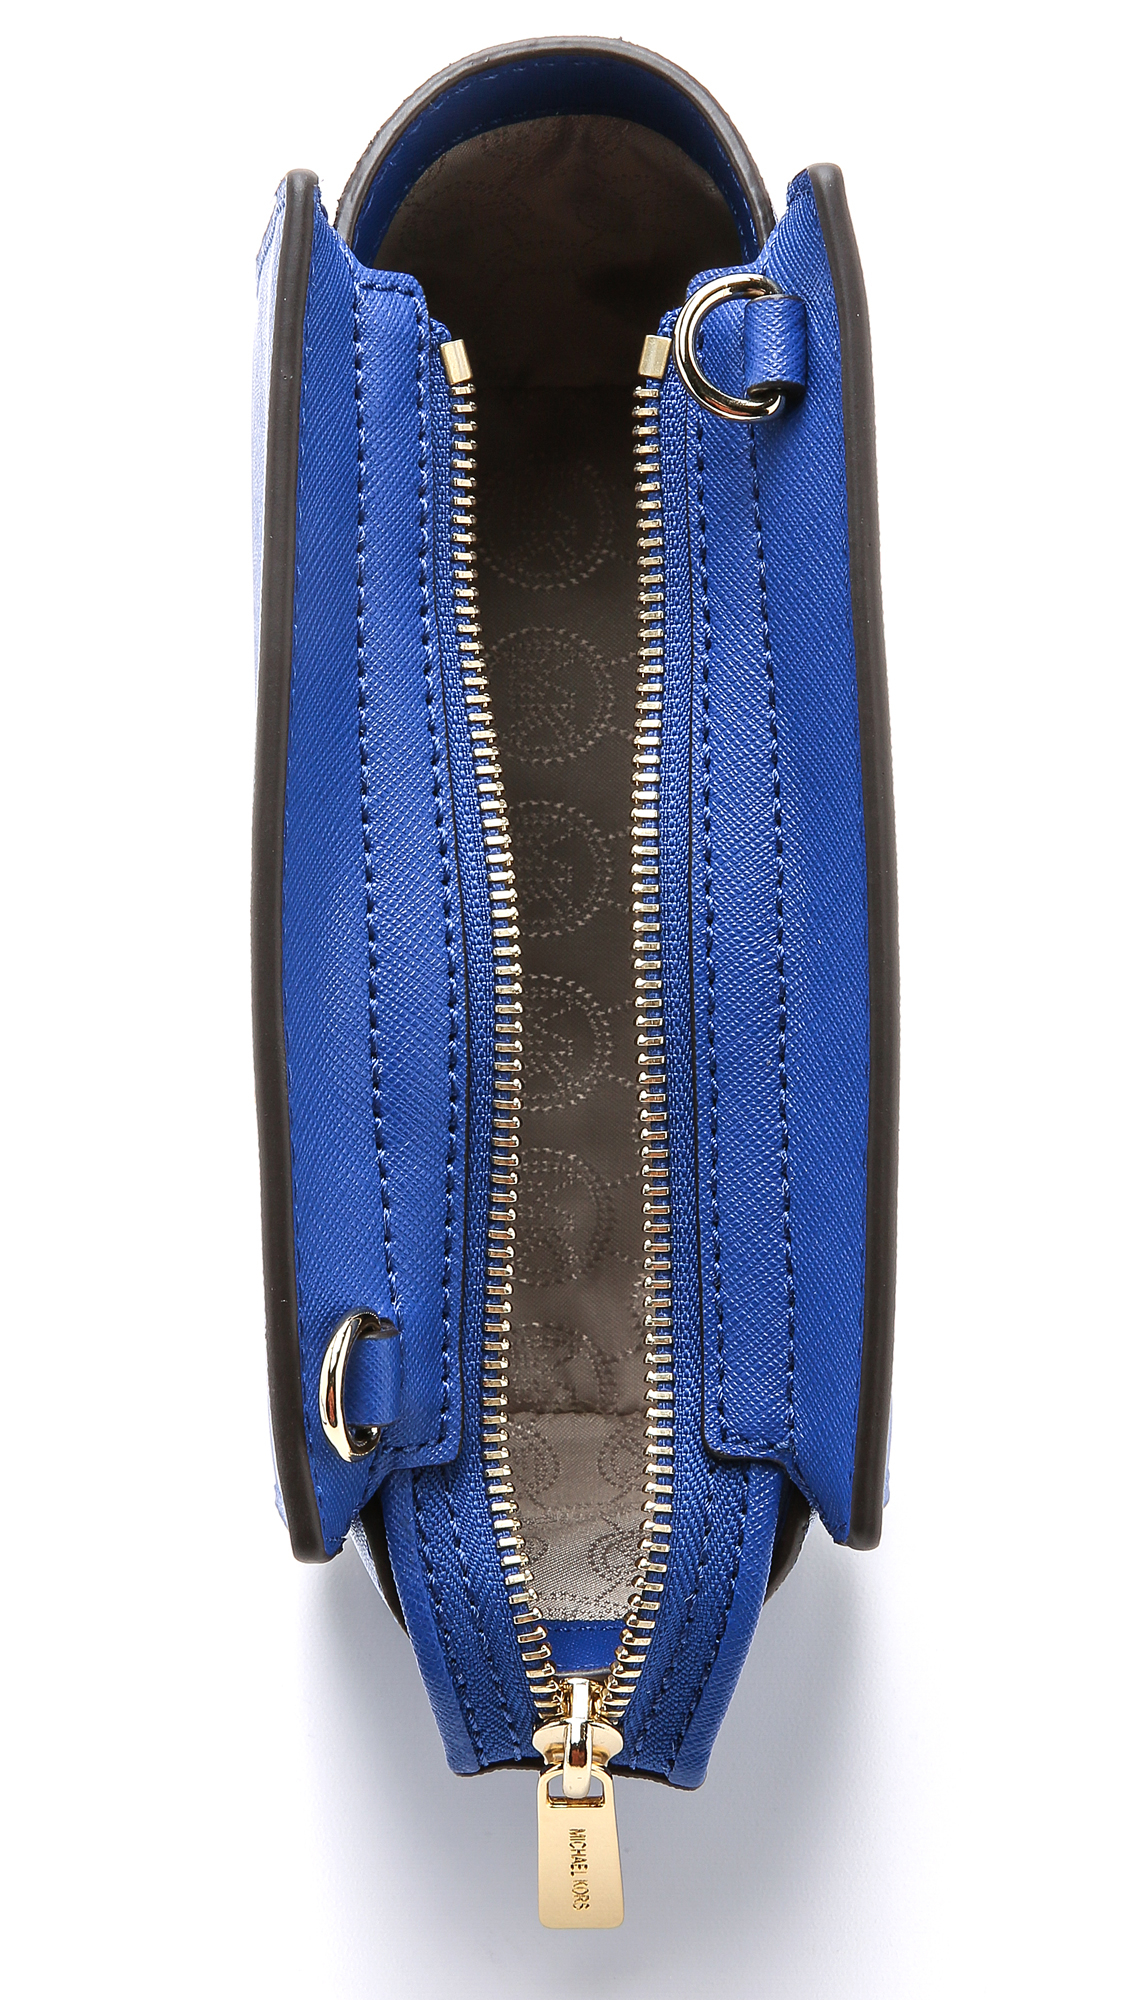 MICHAEL Michael Kors Selma Stud Medium Leather Messenger Bag, Blue